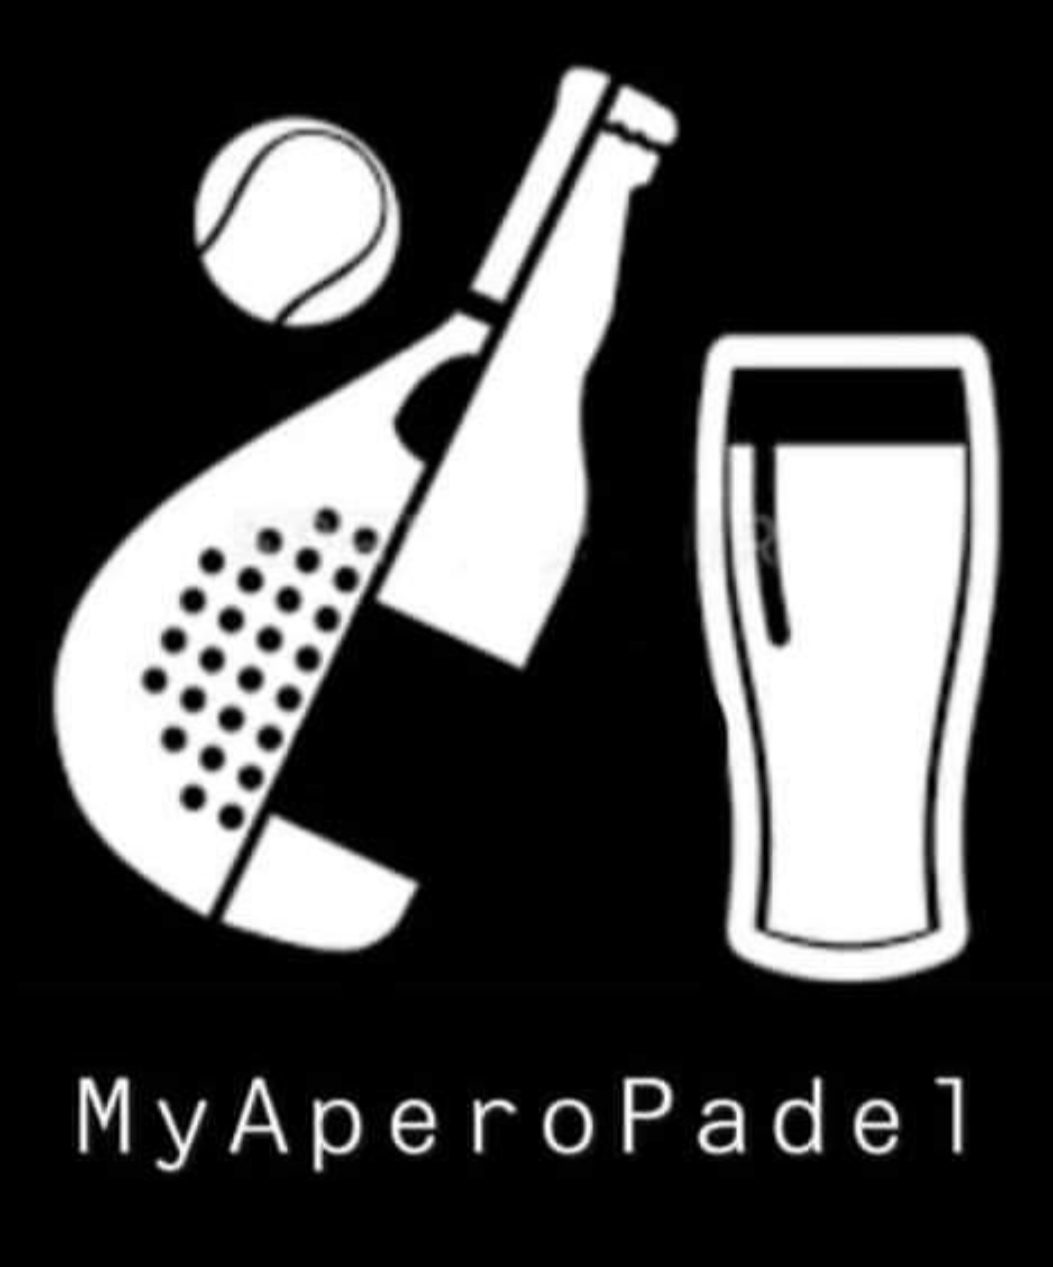 El meu logo Apéro Padel team